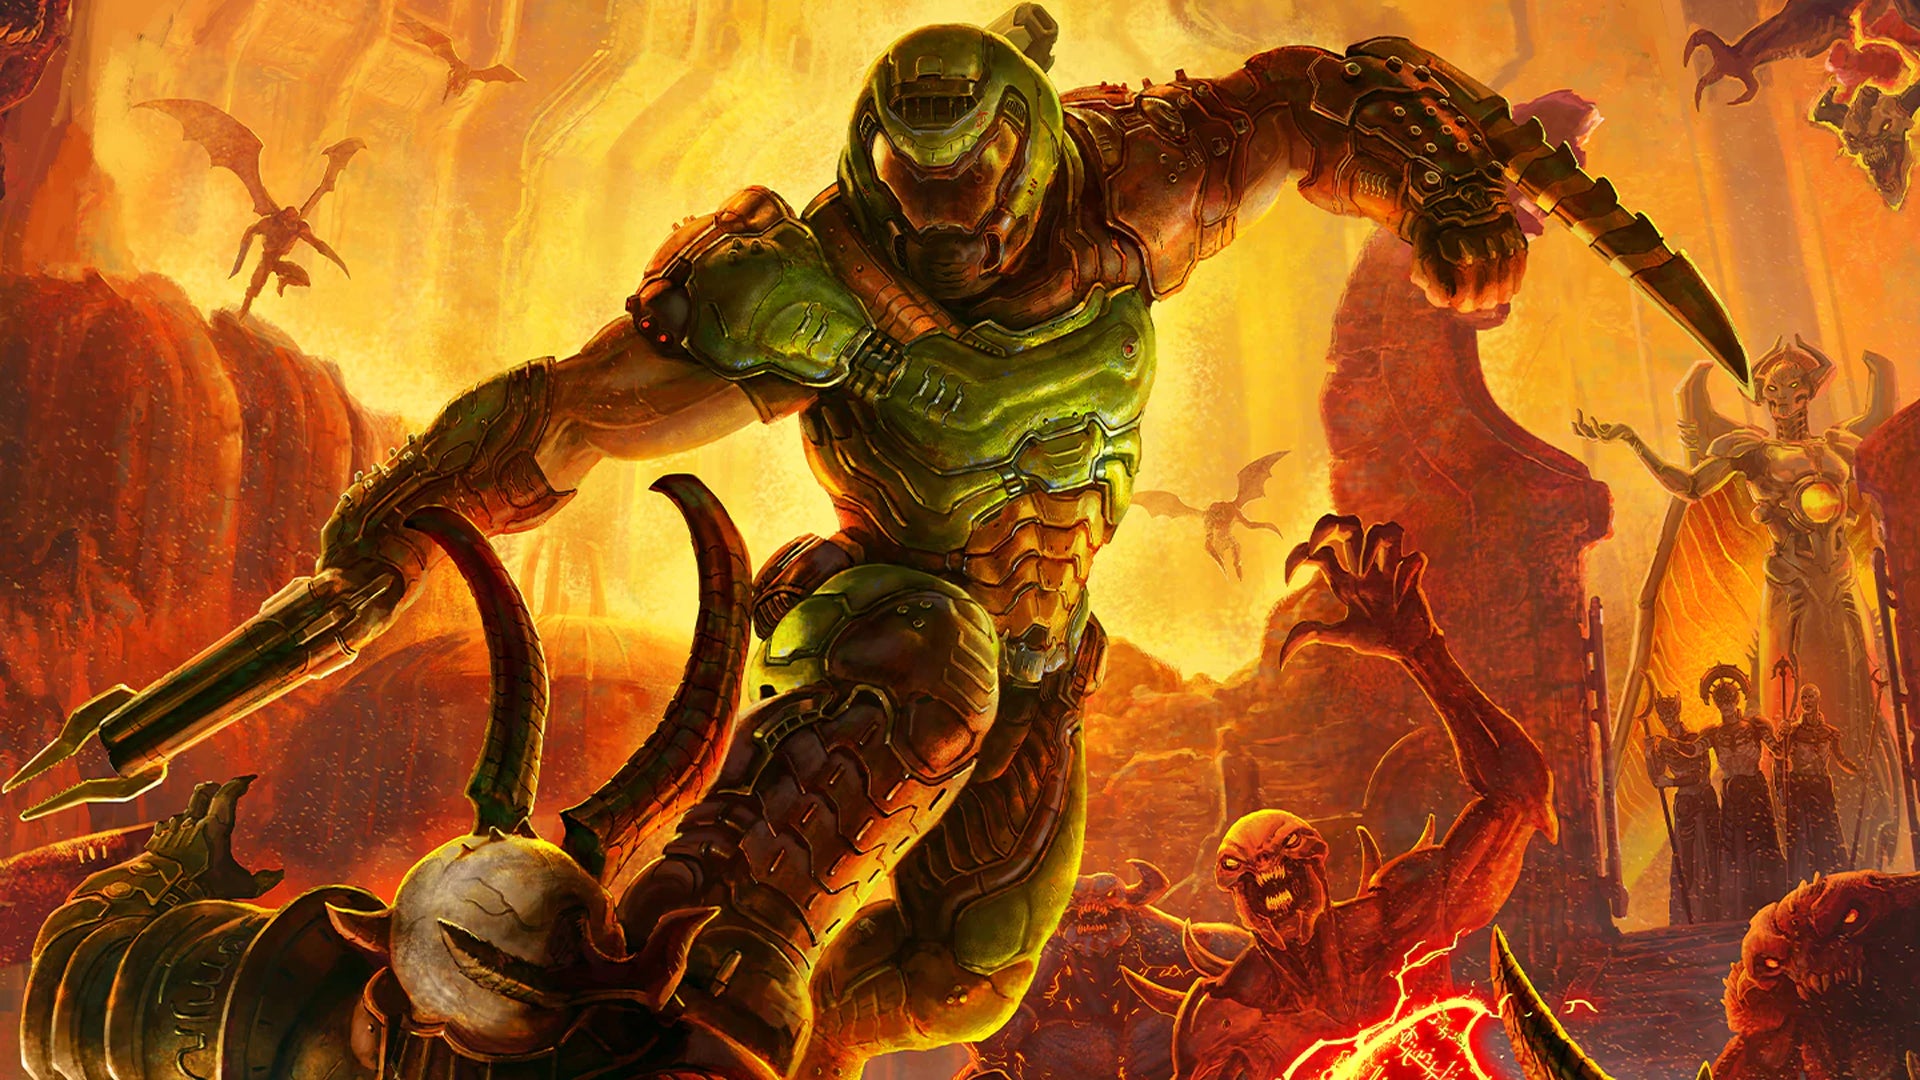 Следующая игра Doom, судя по всему, будет называться The Dark Ages и будет посвящена Армии Тьмы в средневековом мире.